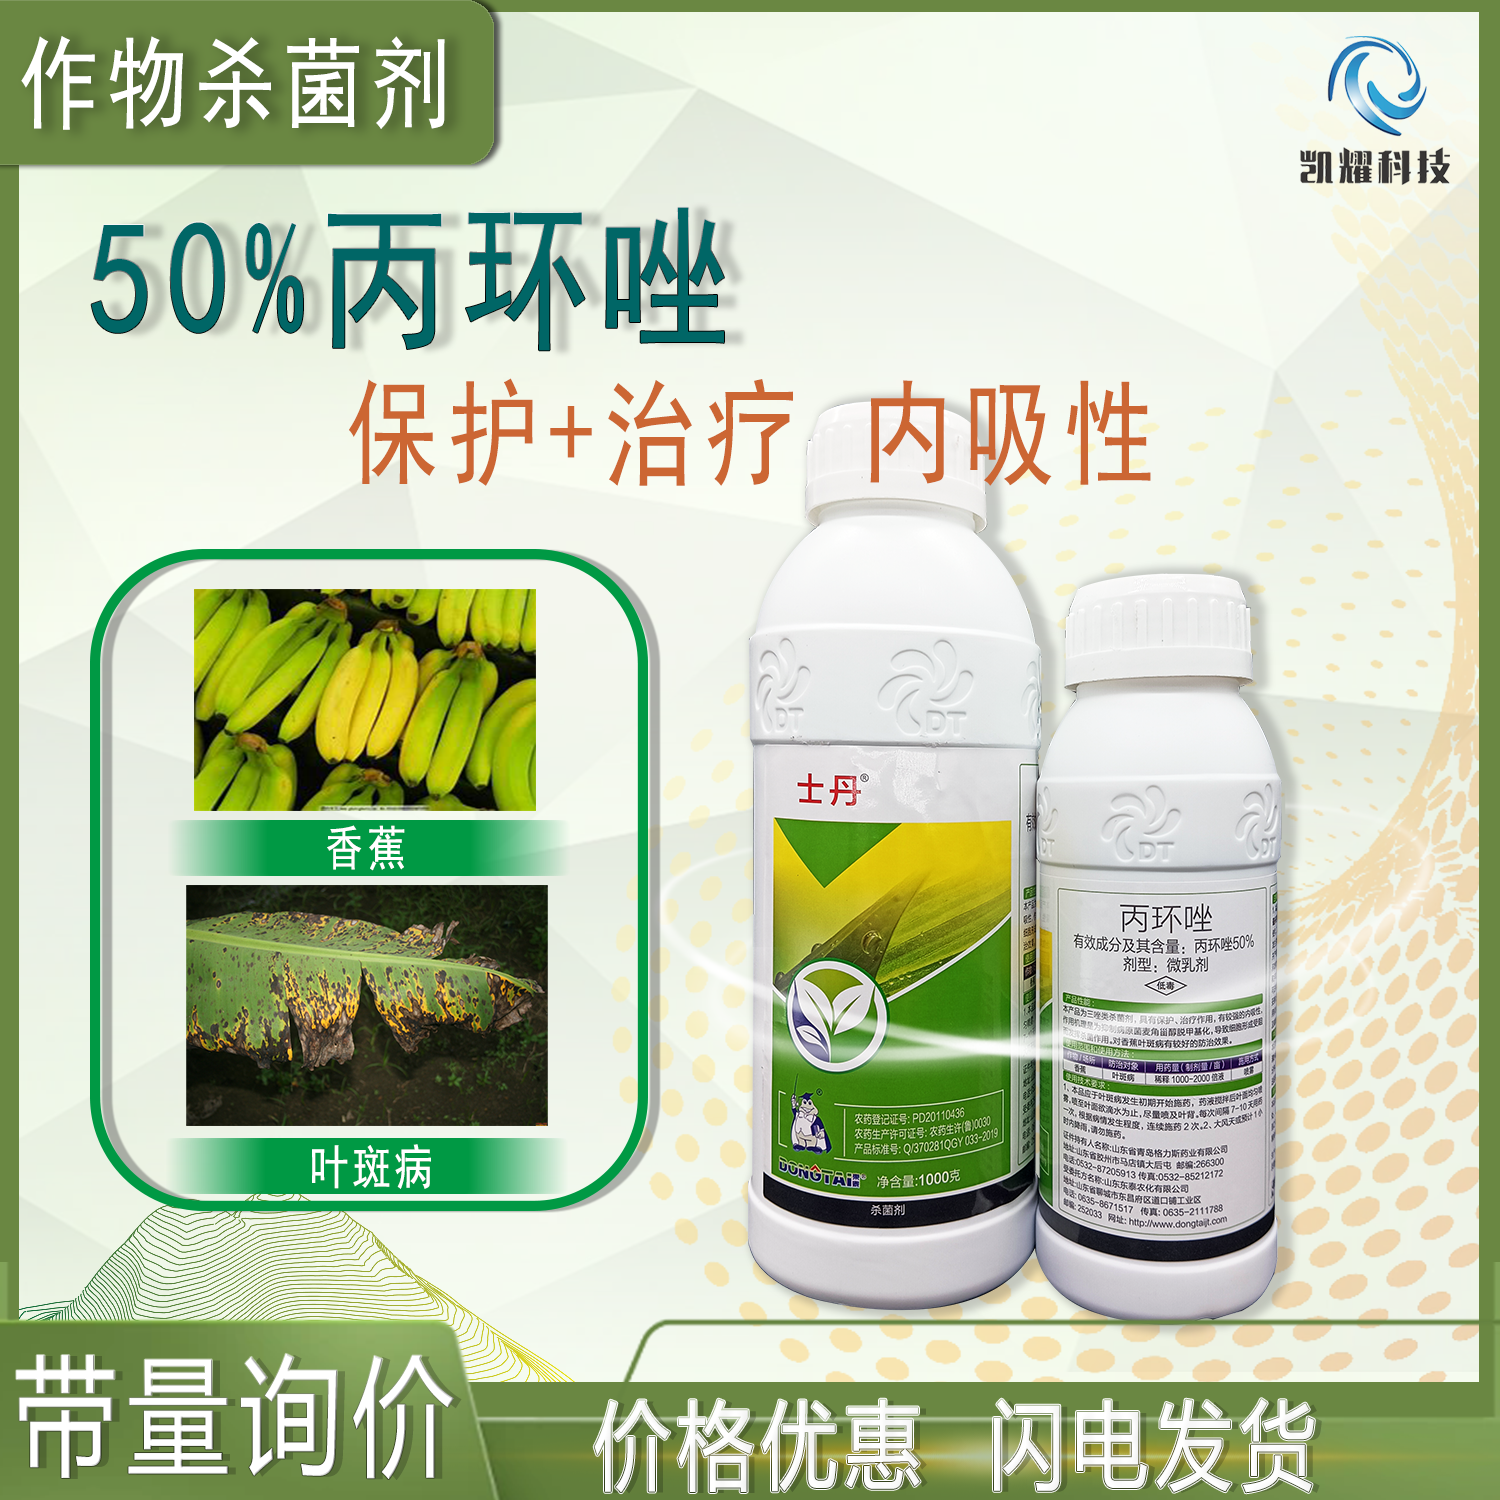 菏泽士丹50%丙环唑果树香蕉叶斑病专用农药微乳剂杀菌剂1000克